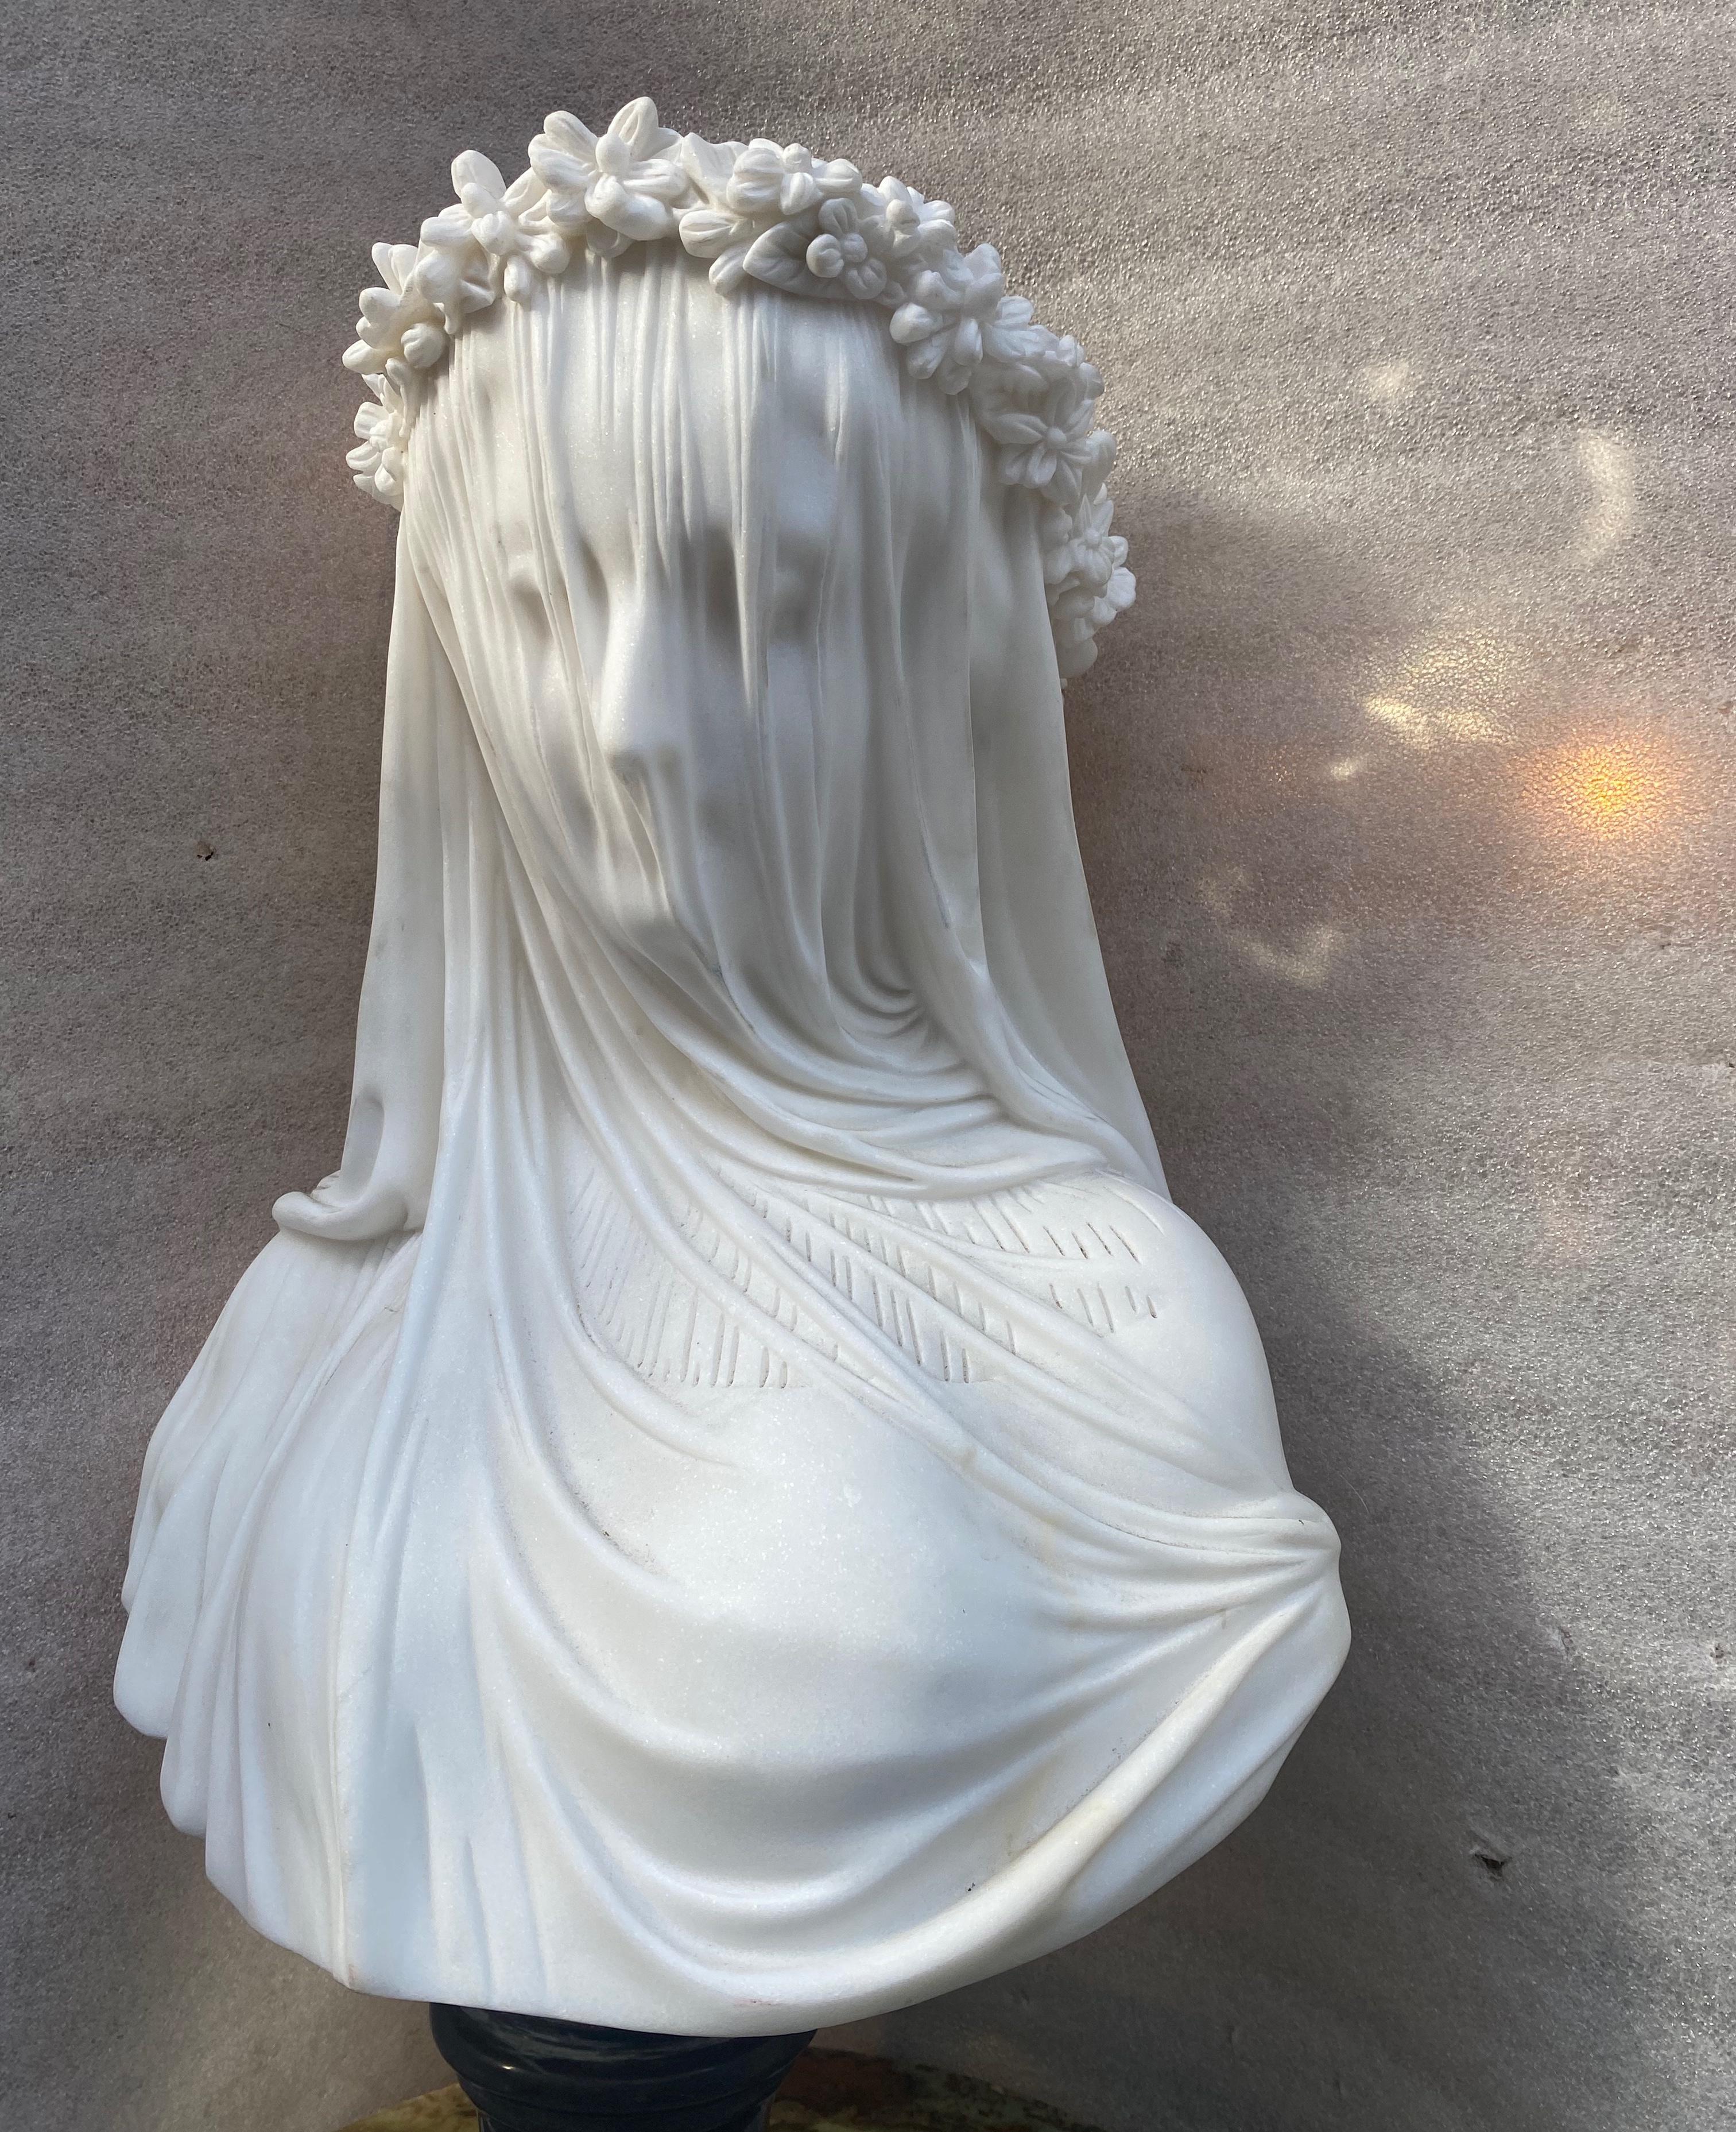 Italian 1900/1920 Neapolitan Carrara Marble Bust of Bride with Veil